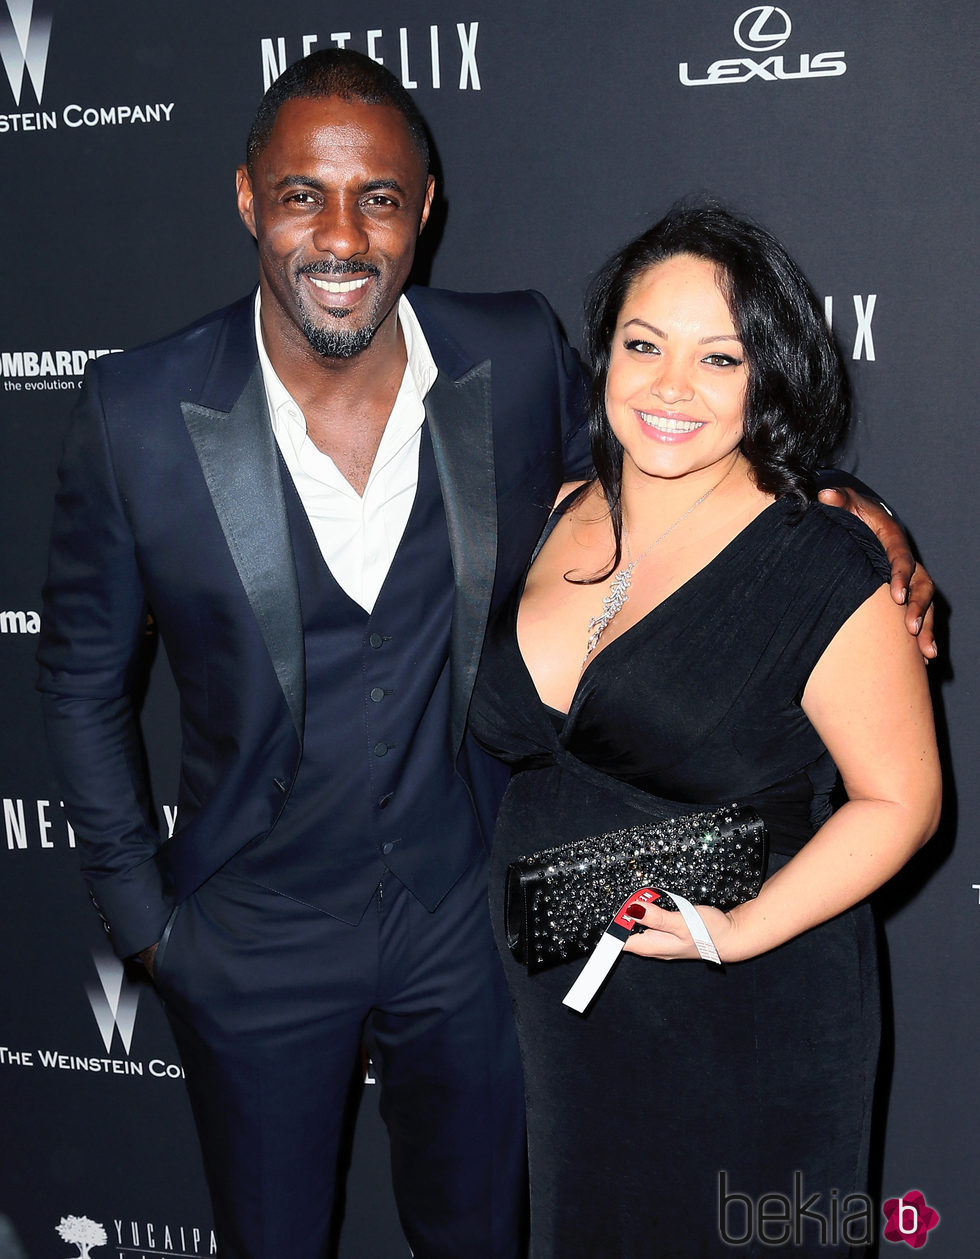 Idris Elba y Naiyana Garth en la fiesta de Netflix antes de ser padres